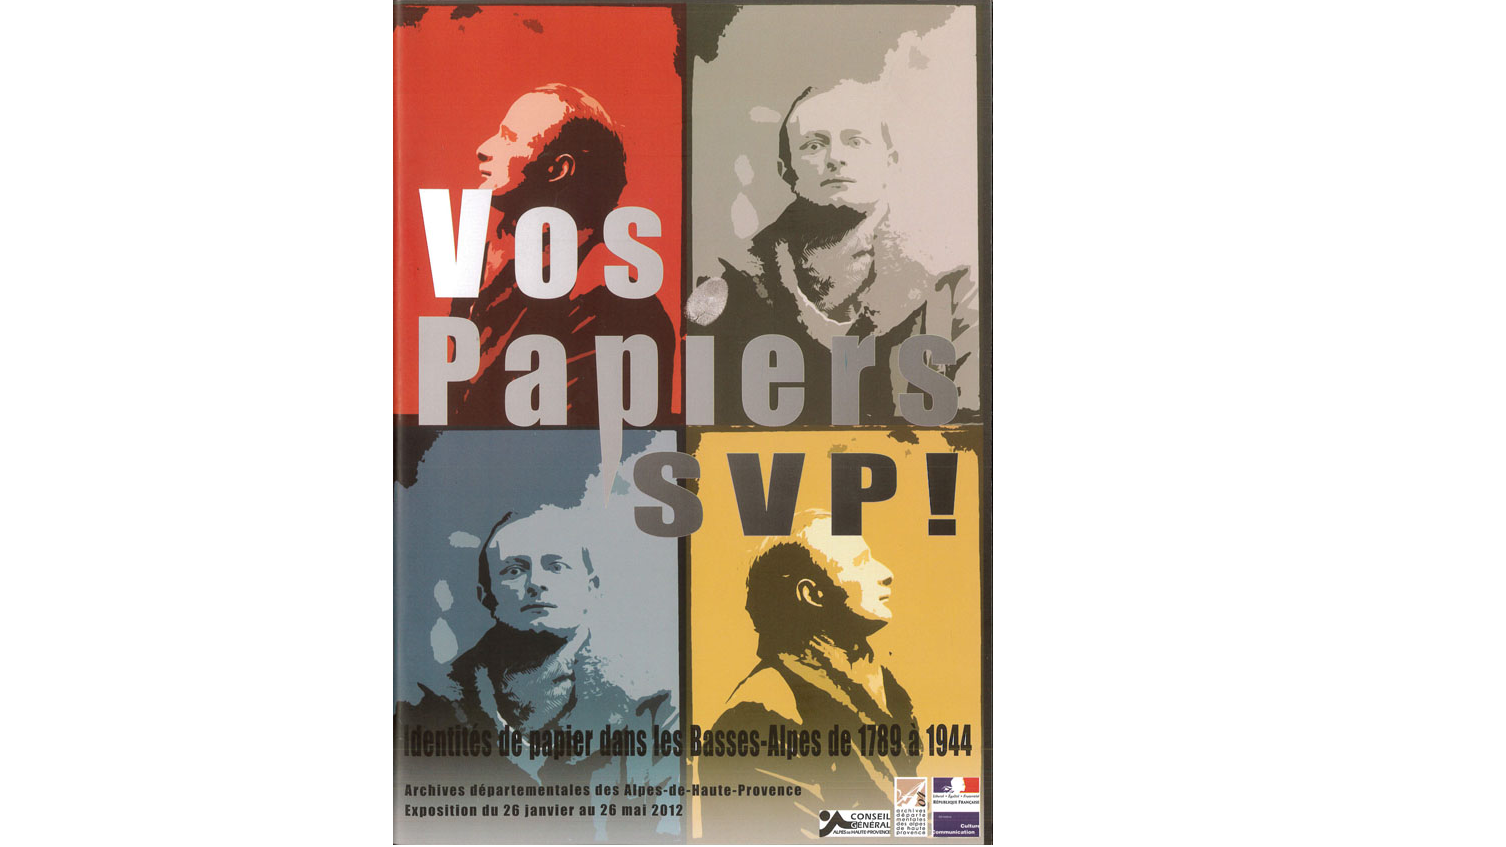 Vos papiers SVP ! Identités de papier dans les Basses-Alpes de 1789 à 1944